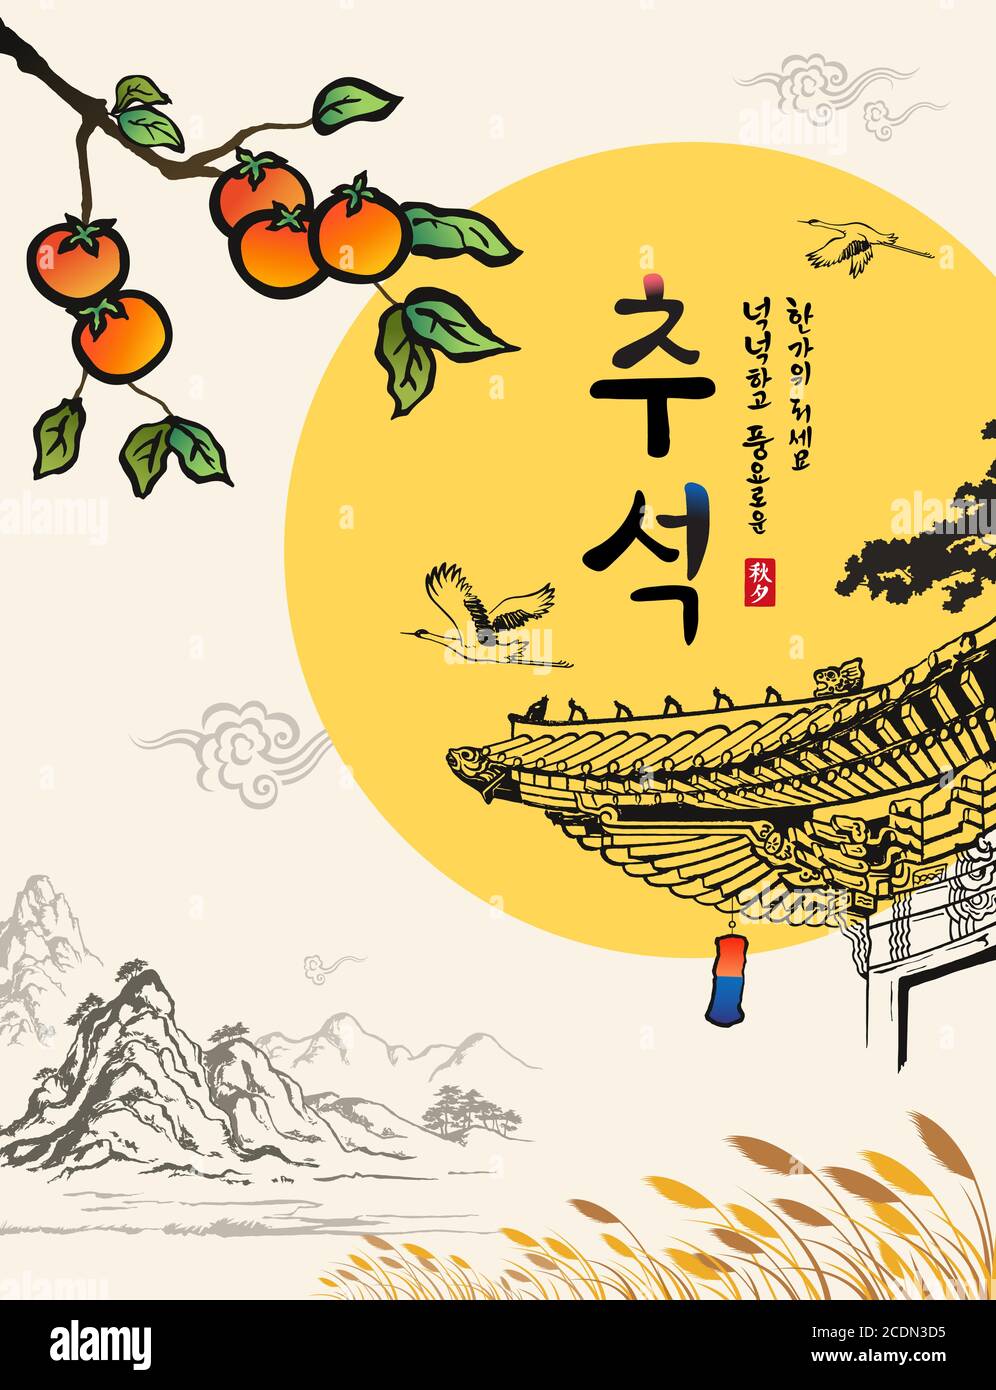 Koreanischer Erntedankfest. Vollmond und traditionelle Malerei, Hanok, Persimmon Baum, Berg, Herbstlandschaft. Chuseok, Hangawi, Koreanische Übersetzung. Stock Vektor